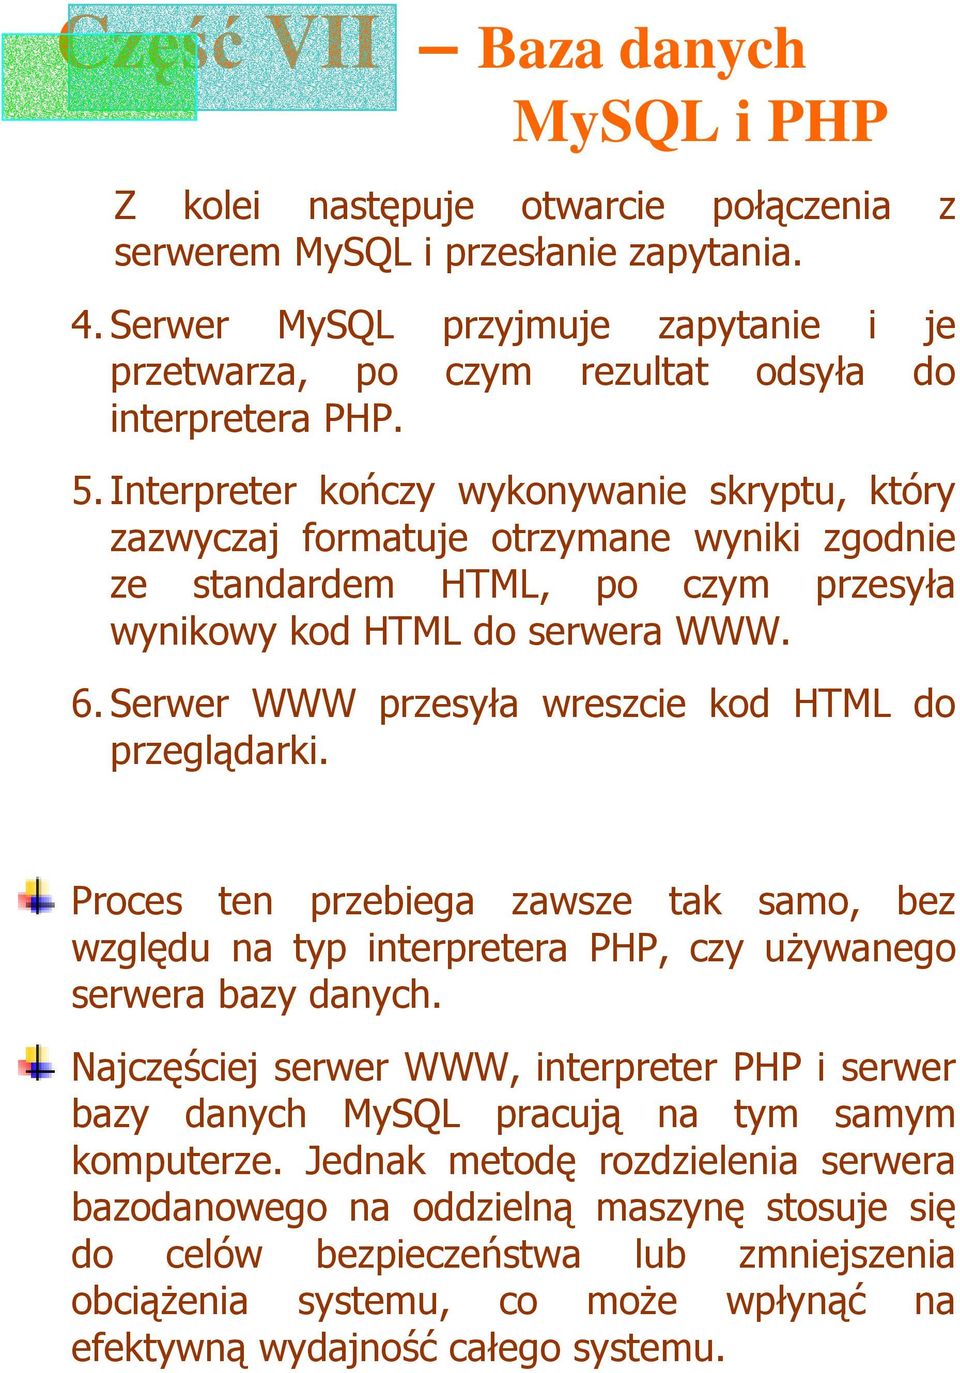 Serwer WWW przesyła wreszcie kod HTML do przeglądarki. Proces ten przebiega zawsze tak samo, bez względu na typ interpretera PHP, czy uŝywanego serwera bazy danych.